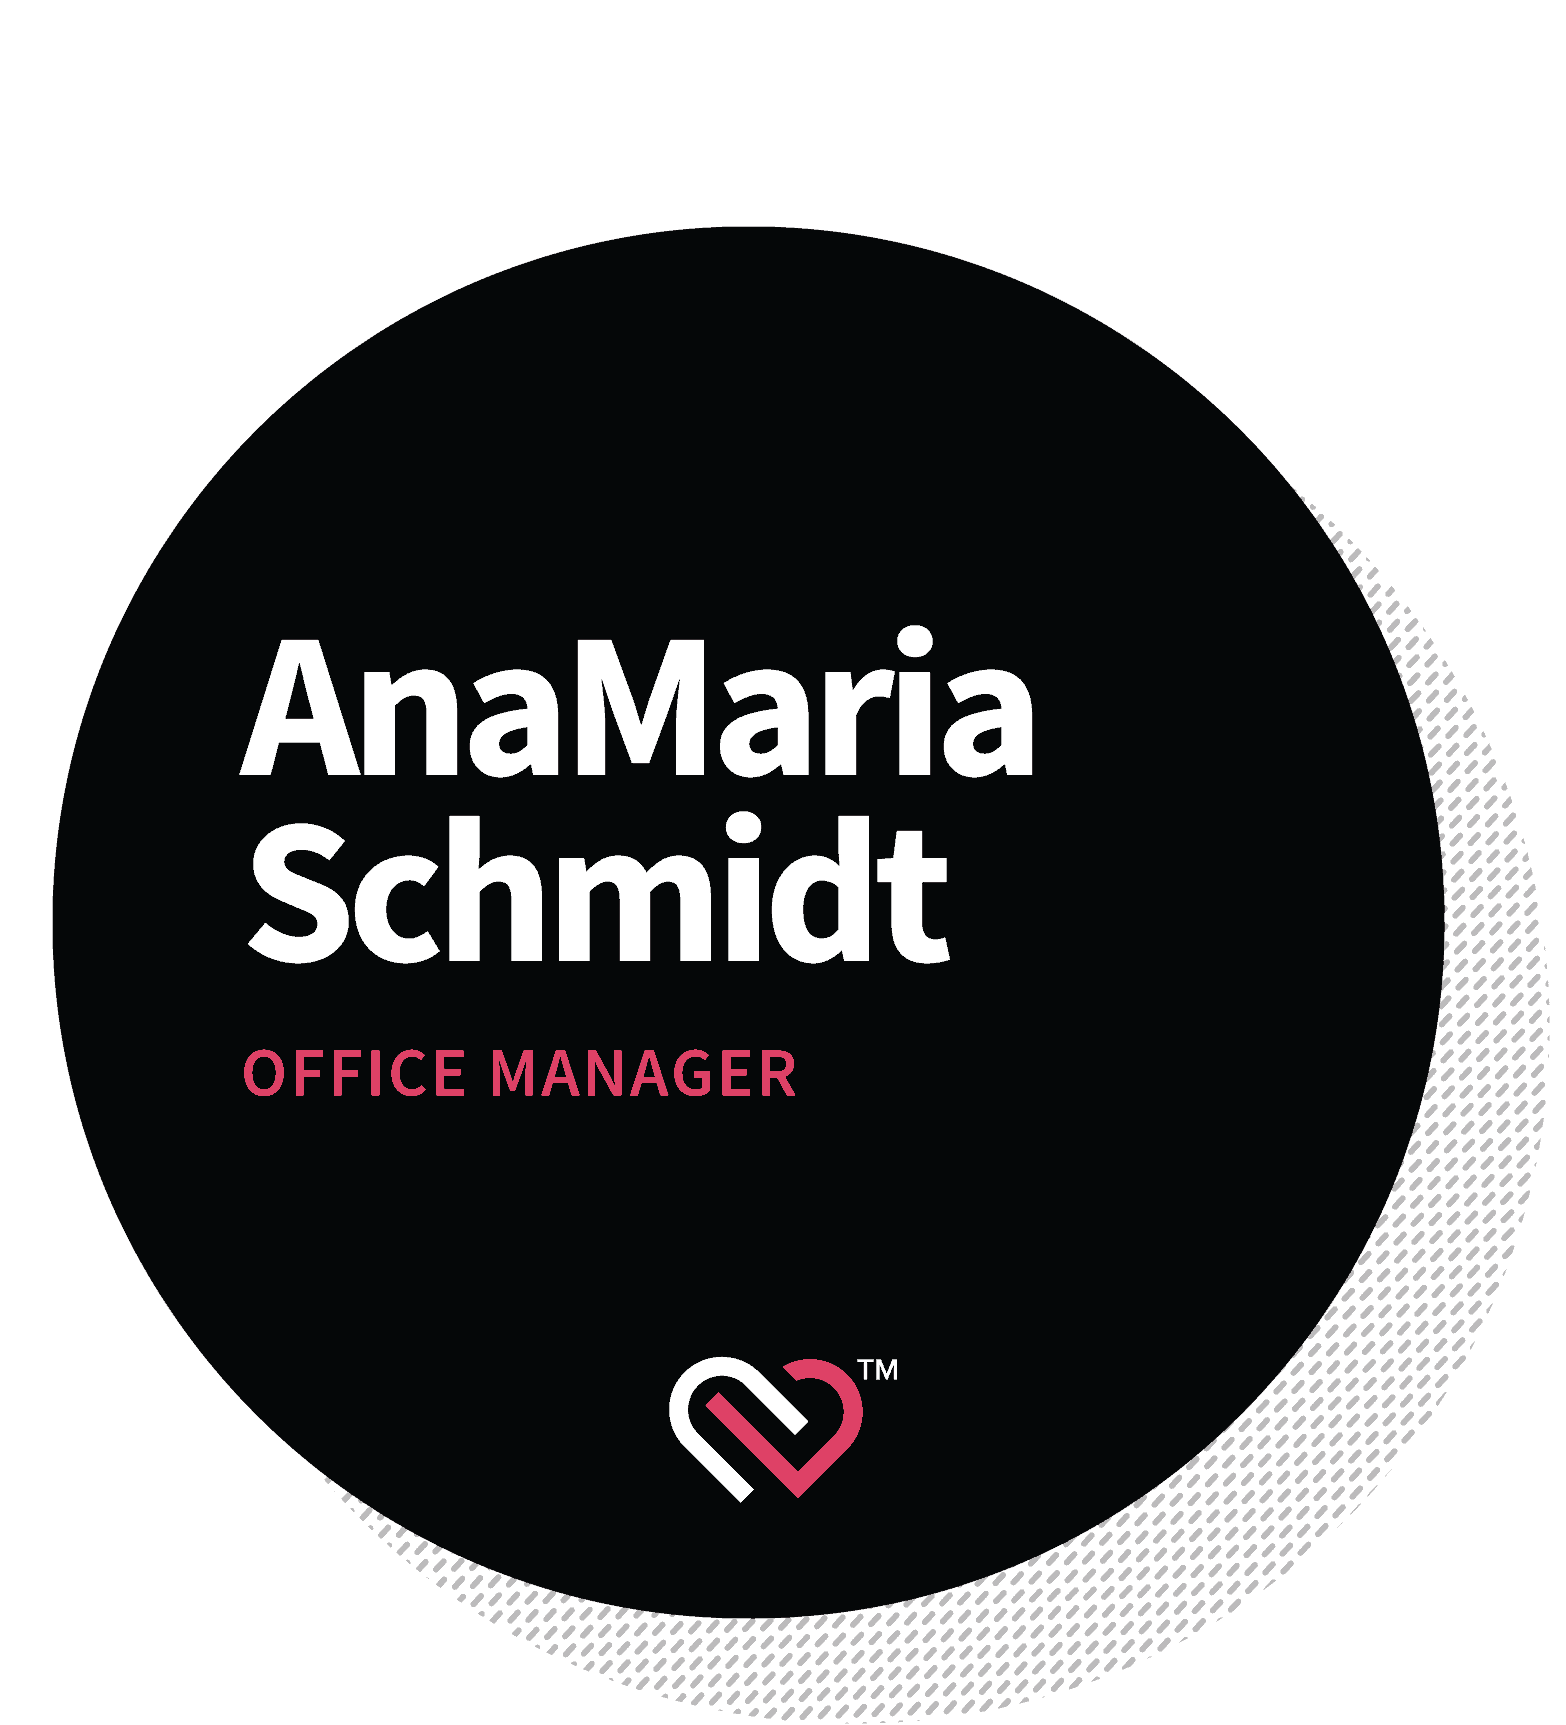 AnaMaria Schmidt